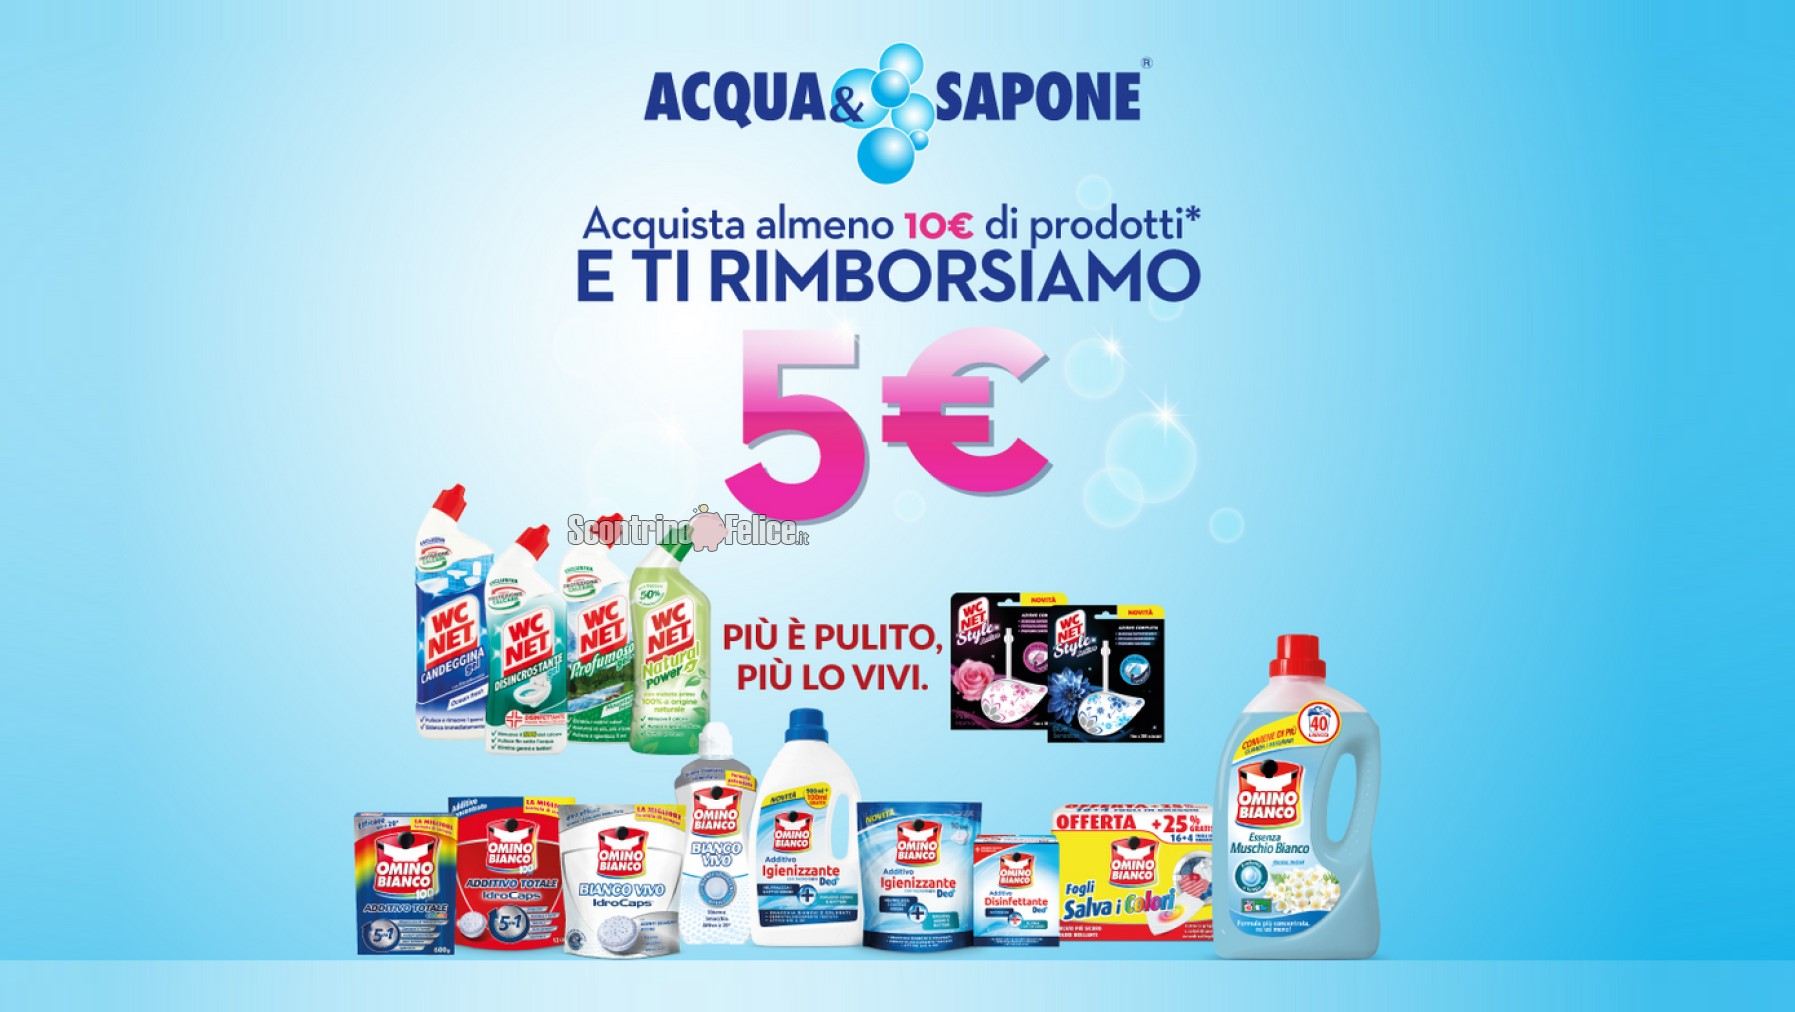 Omino Bianco e WC Net "Il pulito ti rimborsa": acquista almeno 10 euro di prodotti e ricevi il rimborso di 5 euro